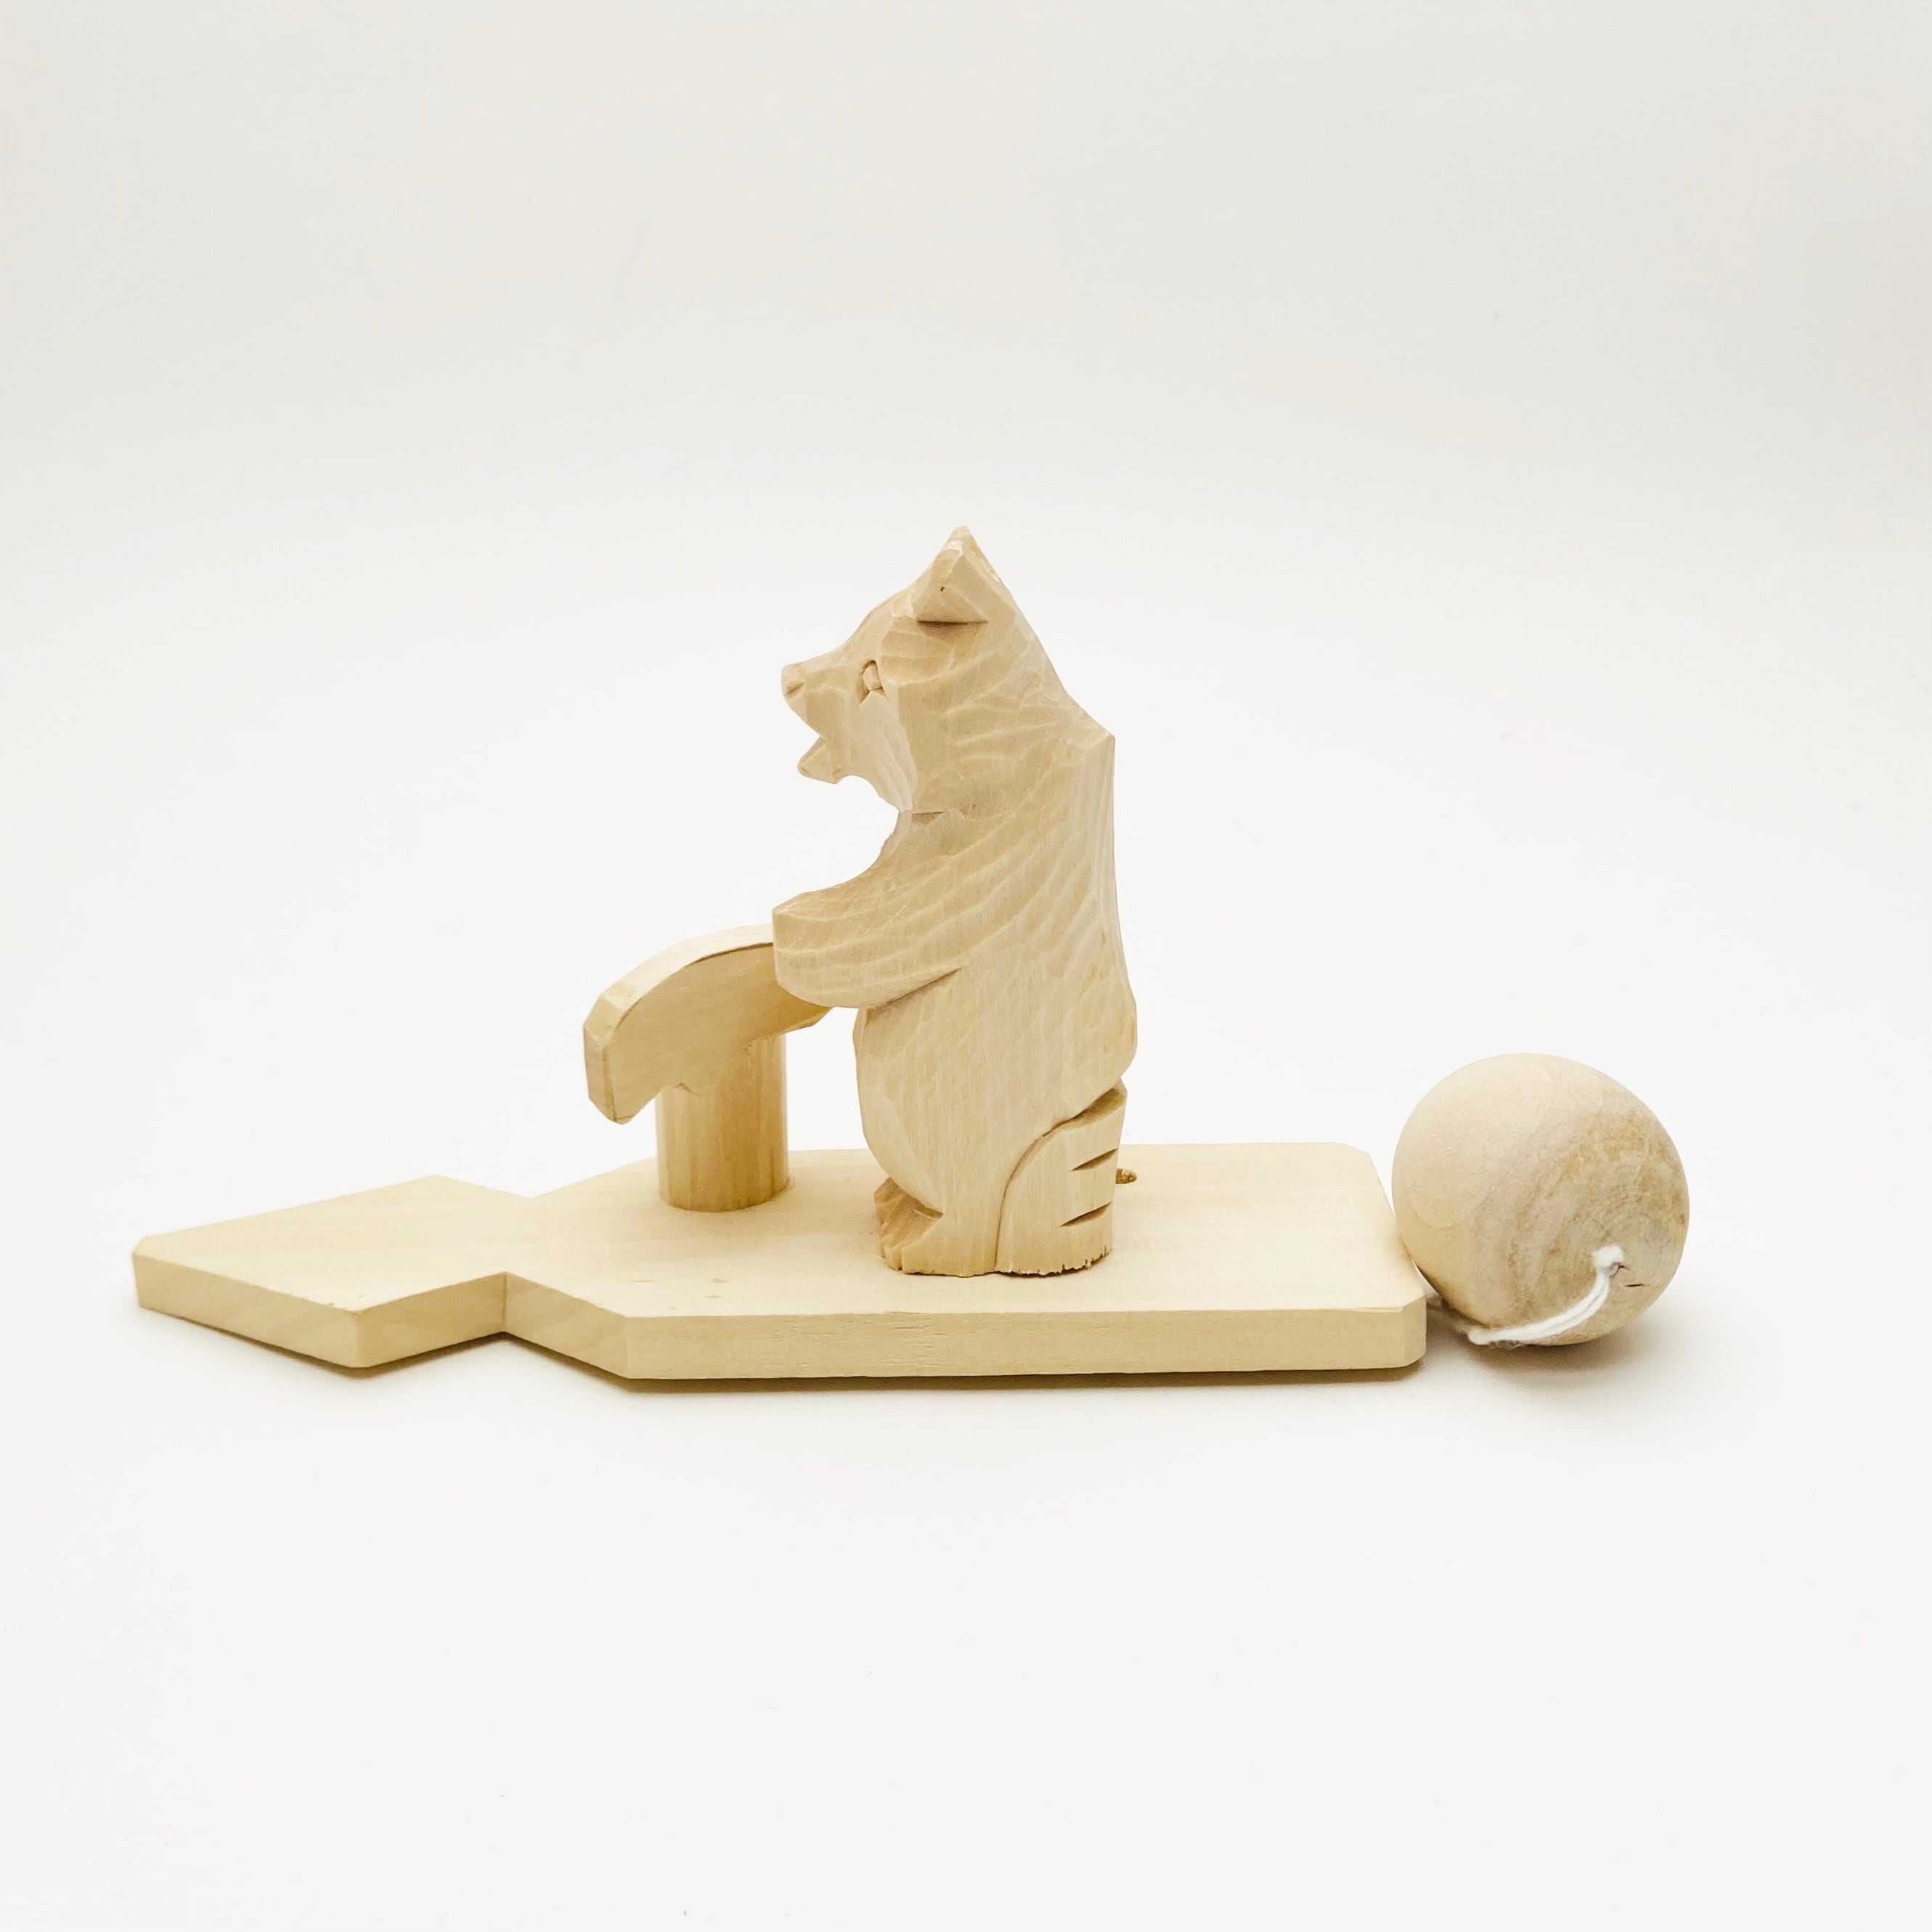 ボゴロツコエ木地玩具「クマの木こり」